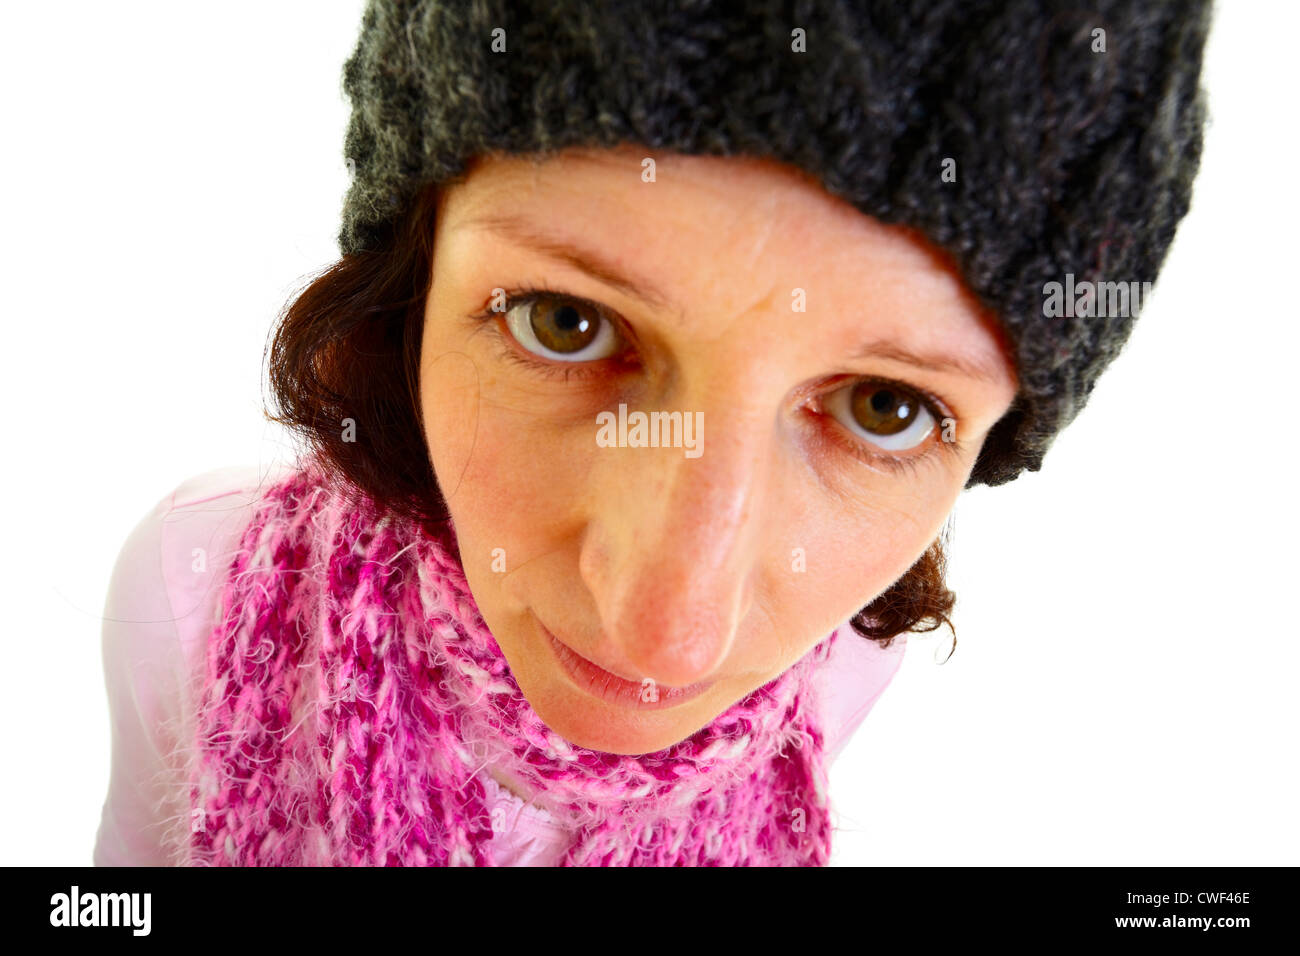 Morena y joven mujer con gorro de lana hace gracioso la expresión facial, aislado sobre fondo blanco, Foto de estudio. Adobe RGB Foto de stock